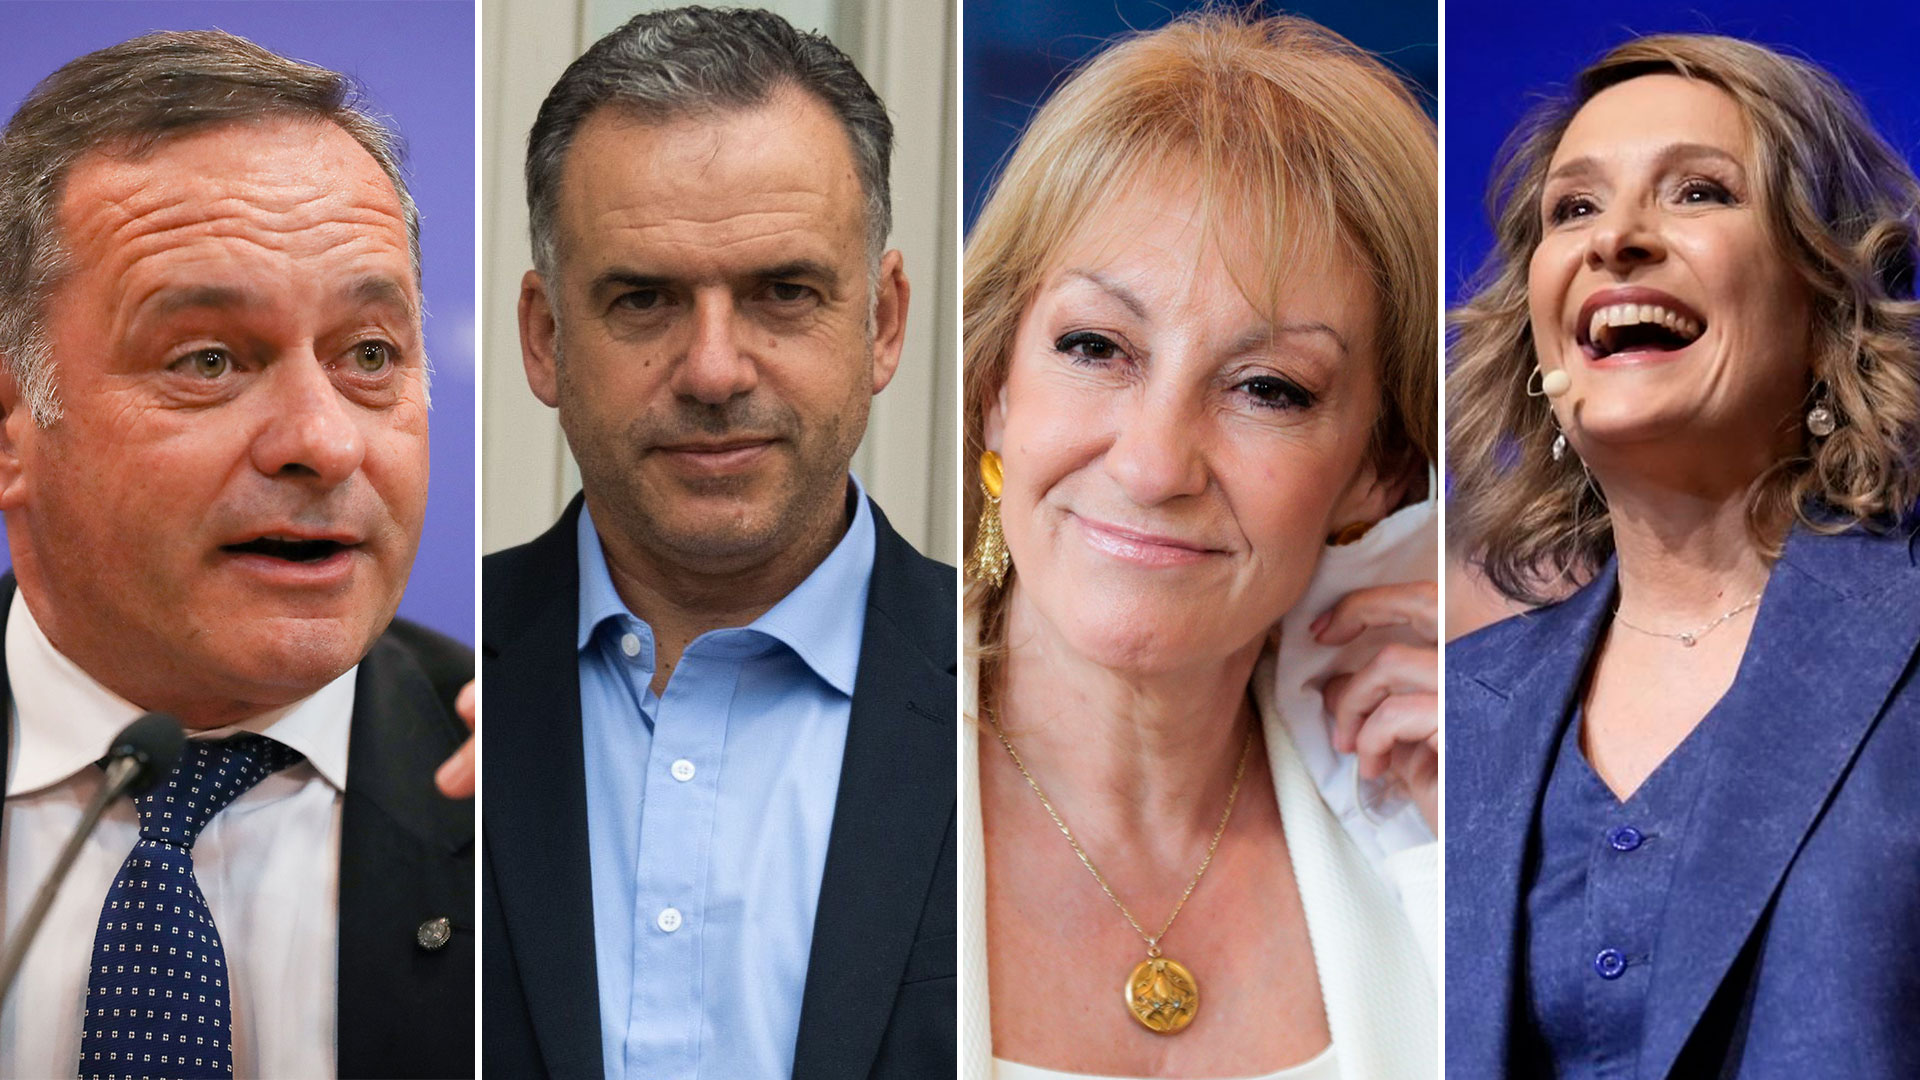 Se definieron los principales candidatos para la elecciones presidenciales de Uruguay: quiénes son los favoritos - Infobae